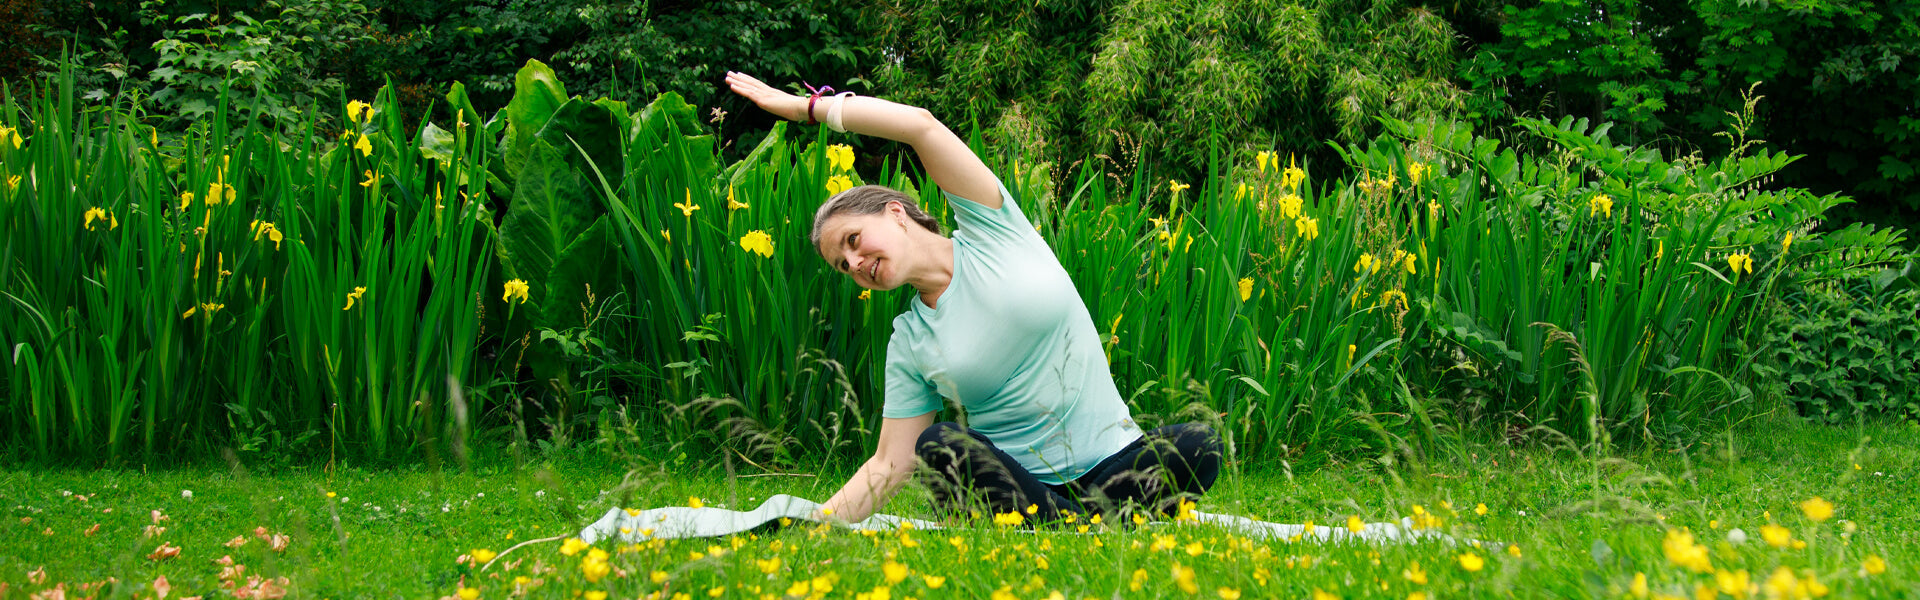 Har du lyst å prøve yoga? Fem råd for en vellykket start.